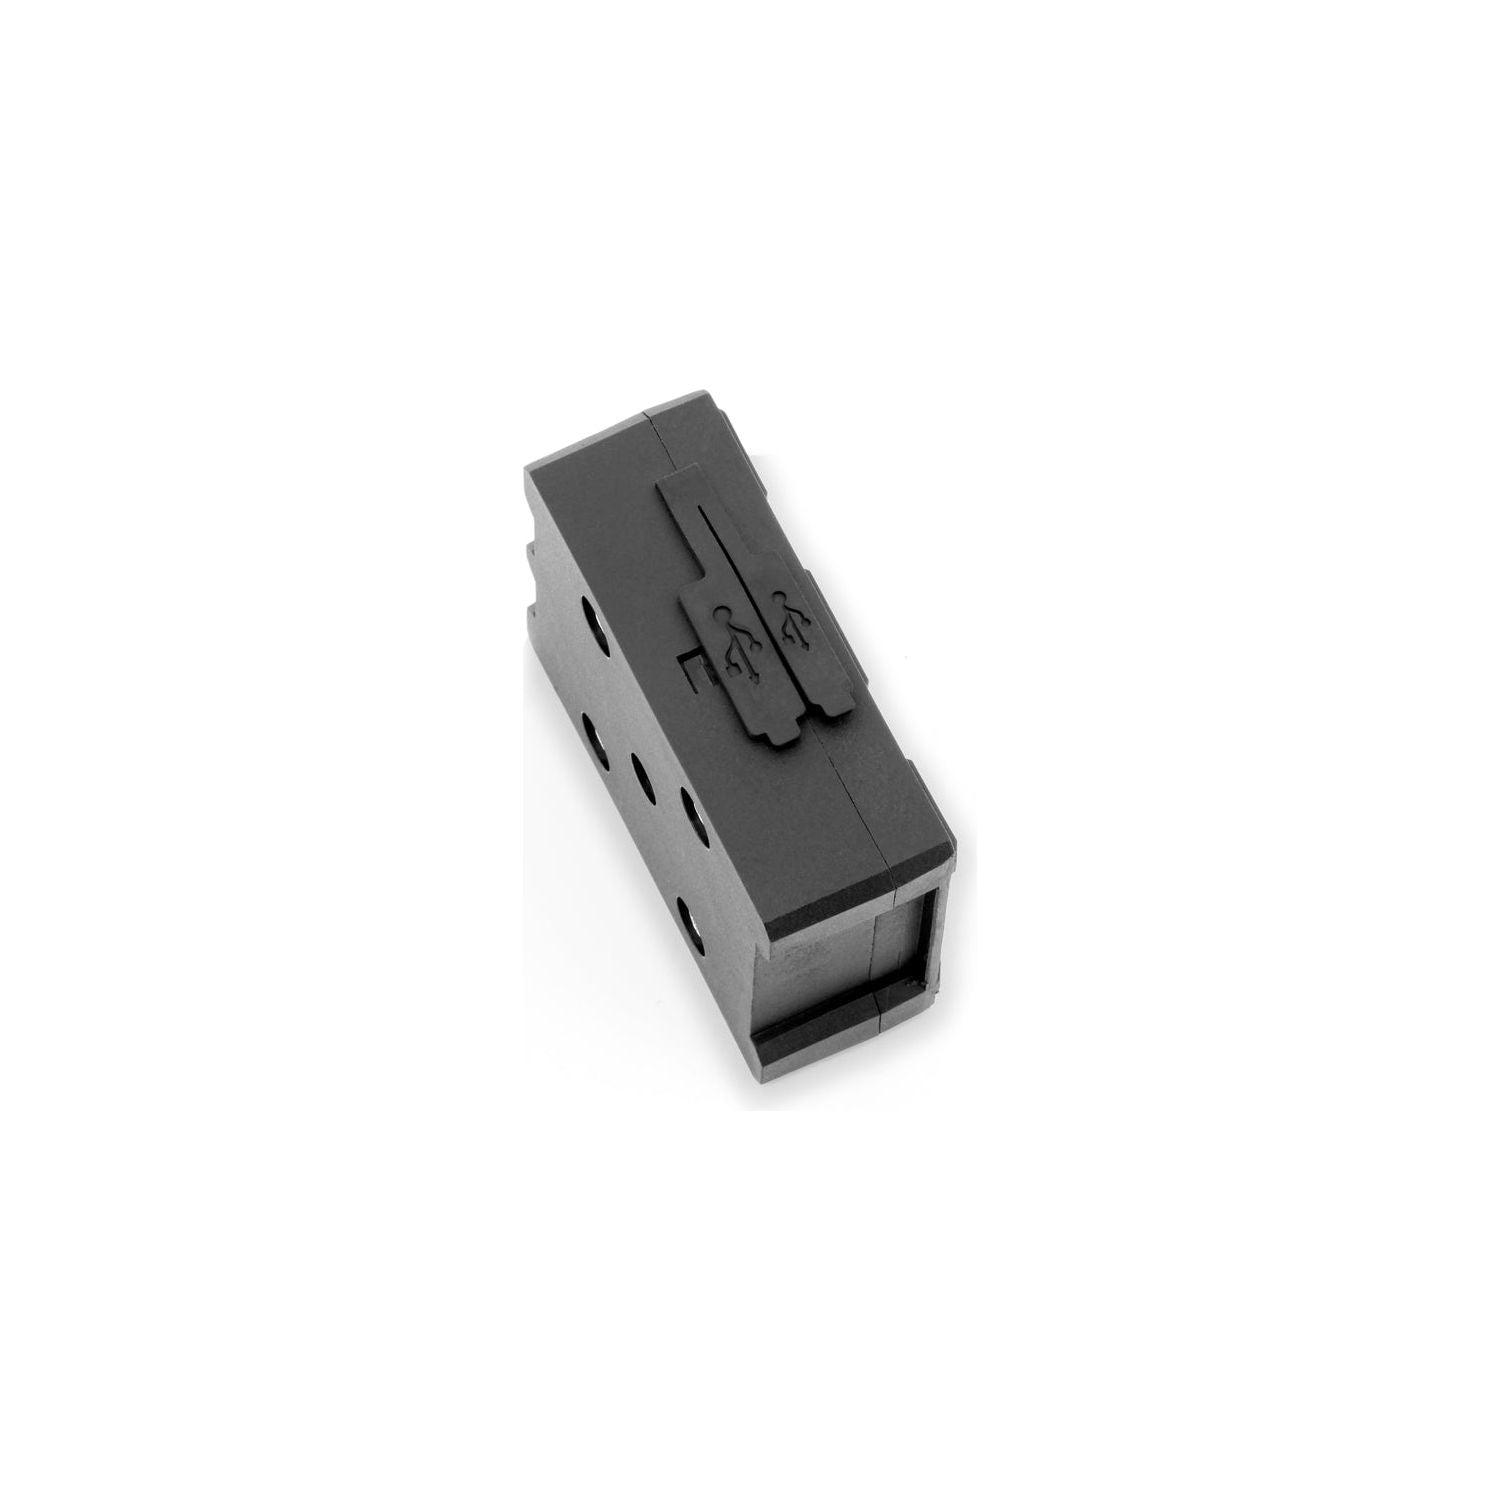 Wunderlich boîtier de chargement USB (21177-002) - EdTools